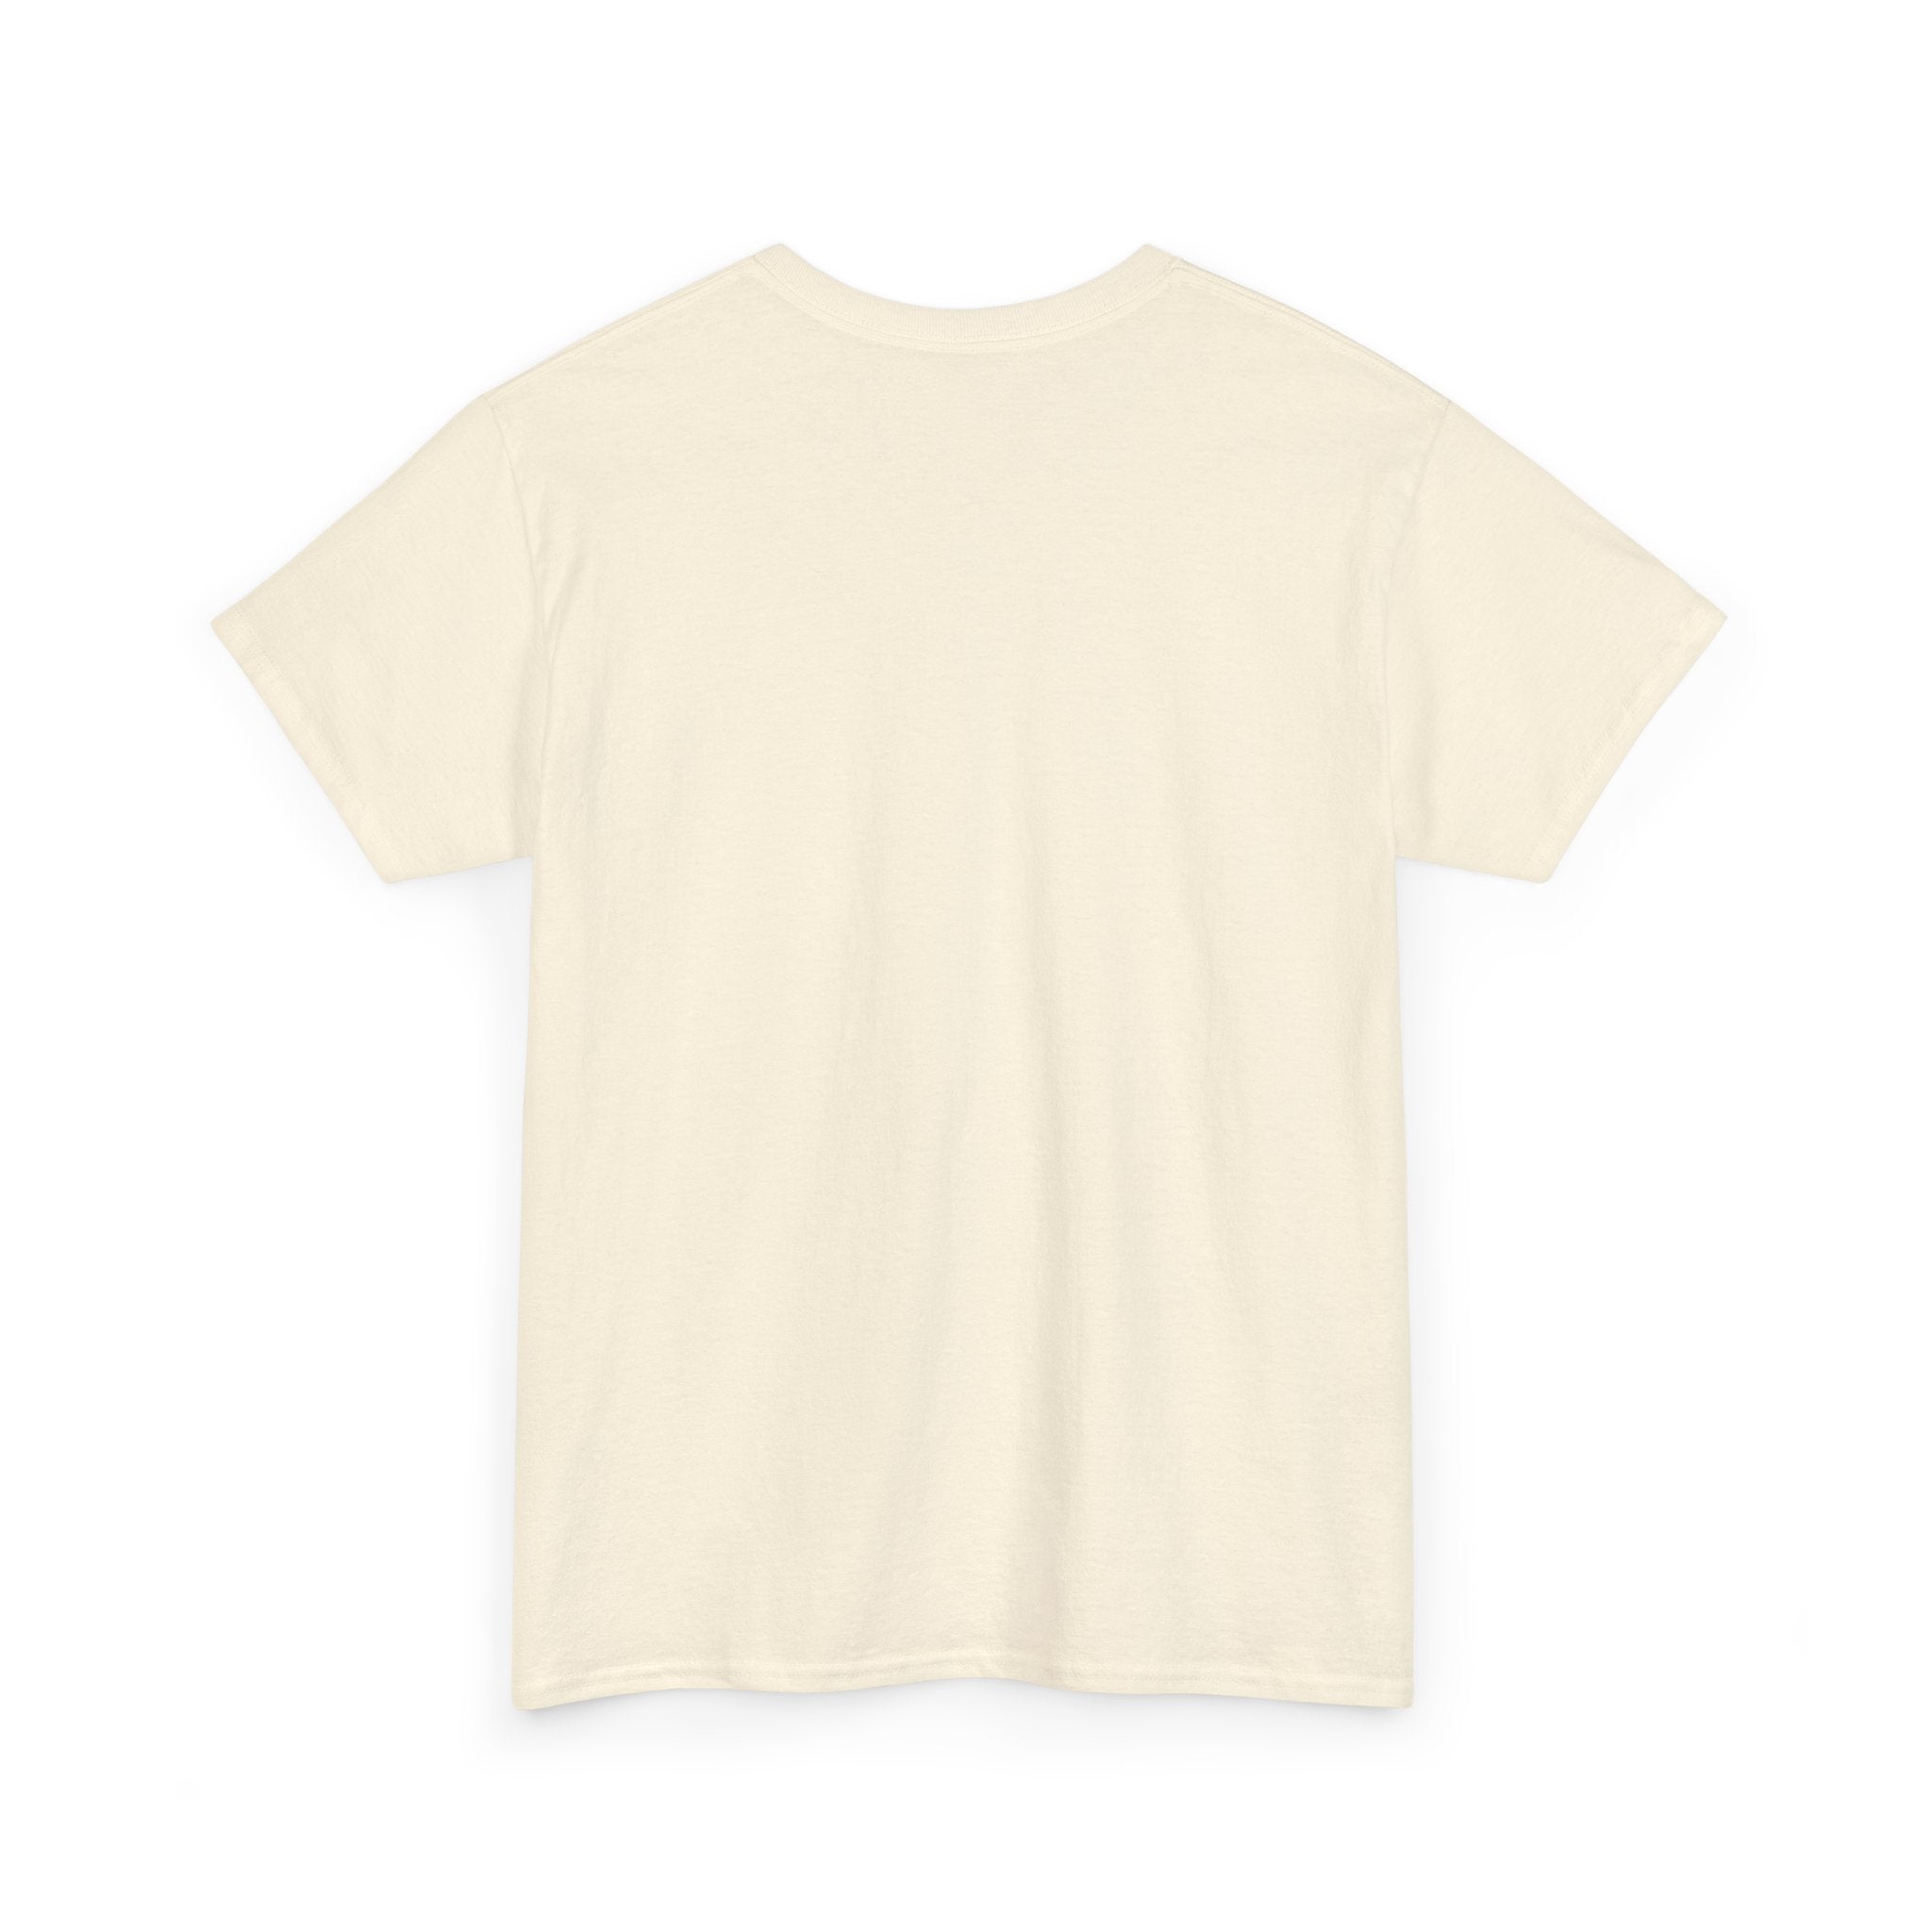 Jeff Gordon T-Shirt